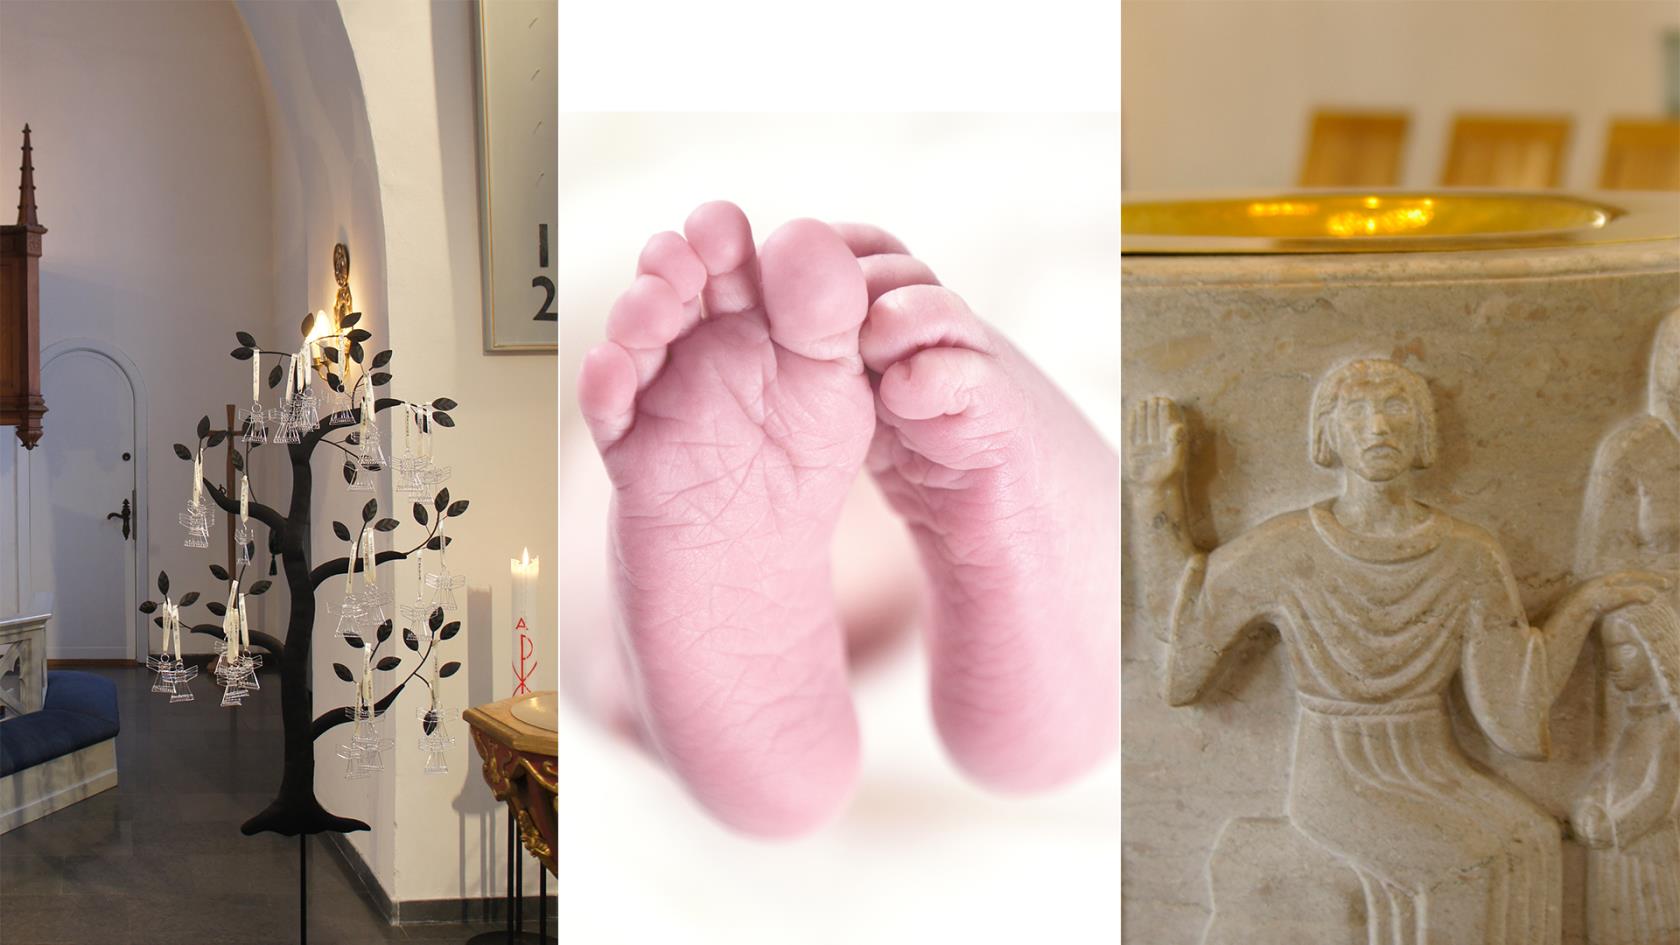 Första bilden är på dopänglar, den andra bilden är på bebisfötter och den tredje bilden är på dopfunten.